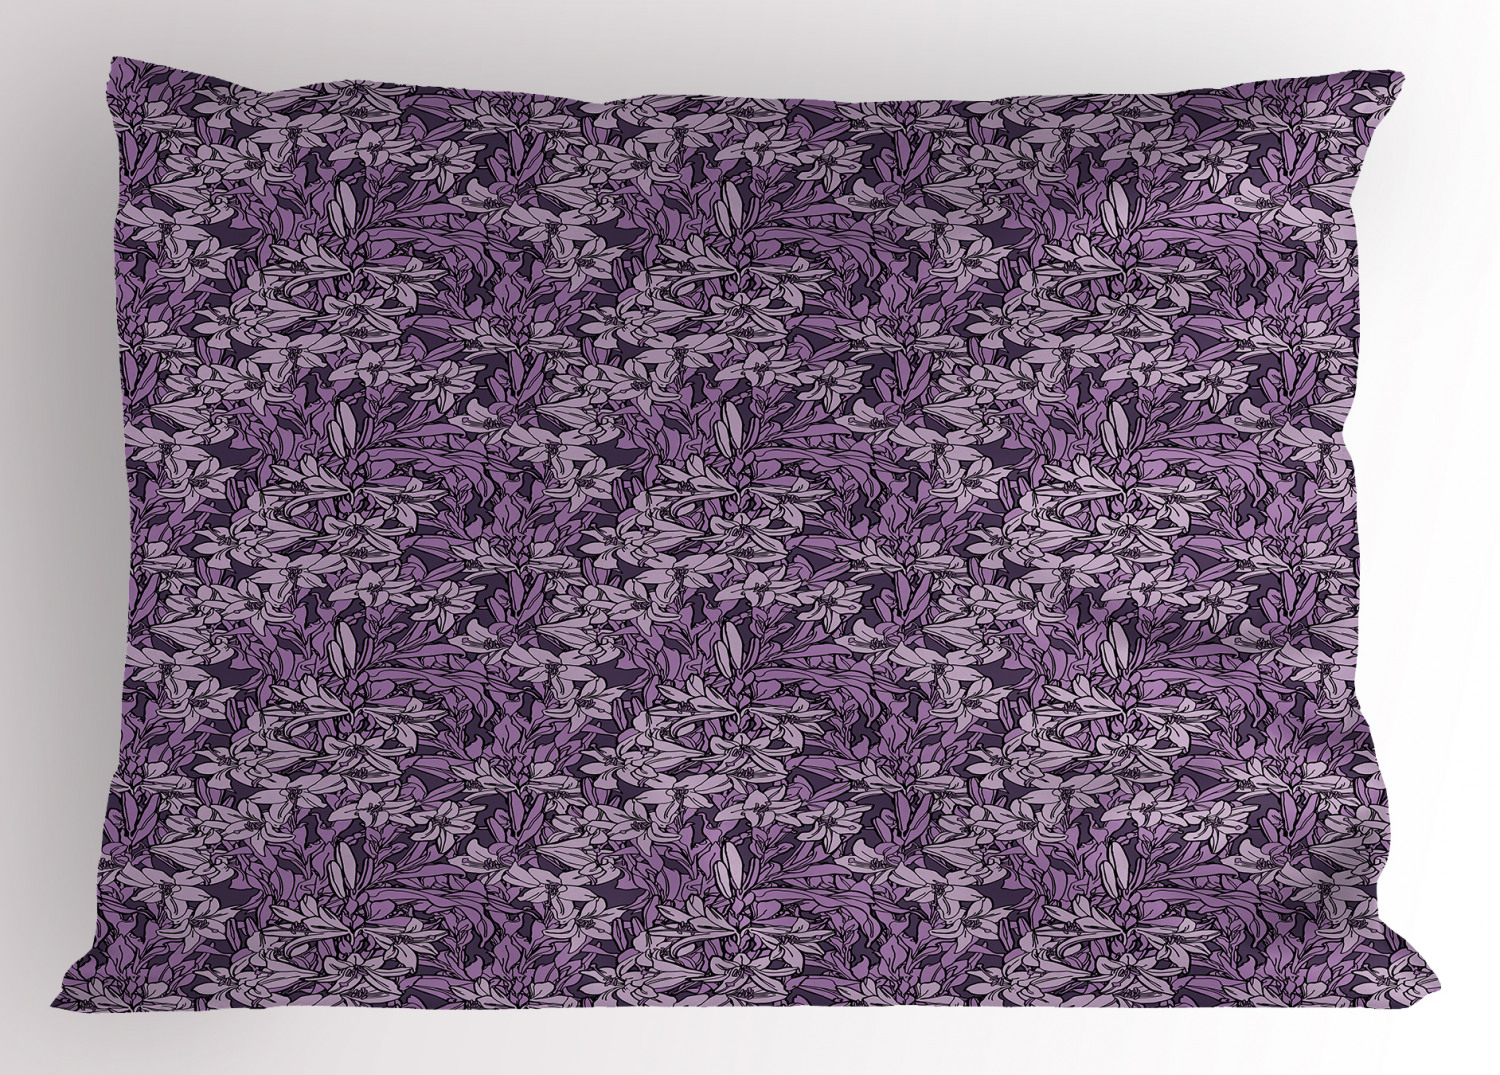 Details about   Lavender Tones Pillow Sham Decorative Pillowcase 3 Sizes Bedroom Decor Ambesonne 